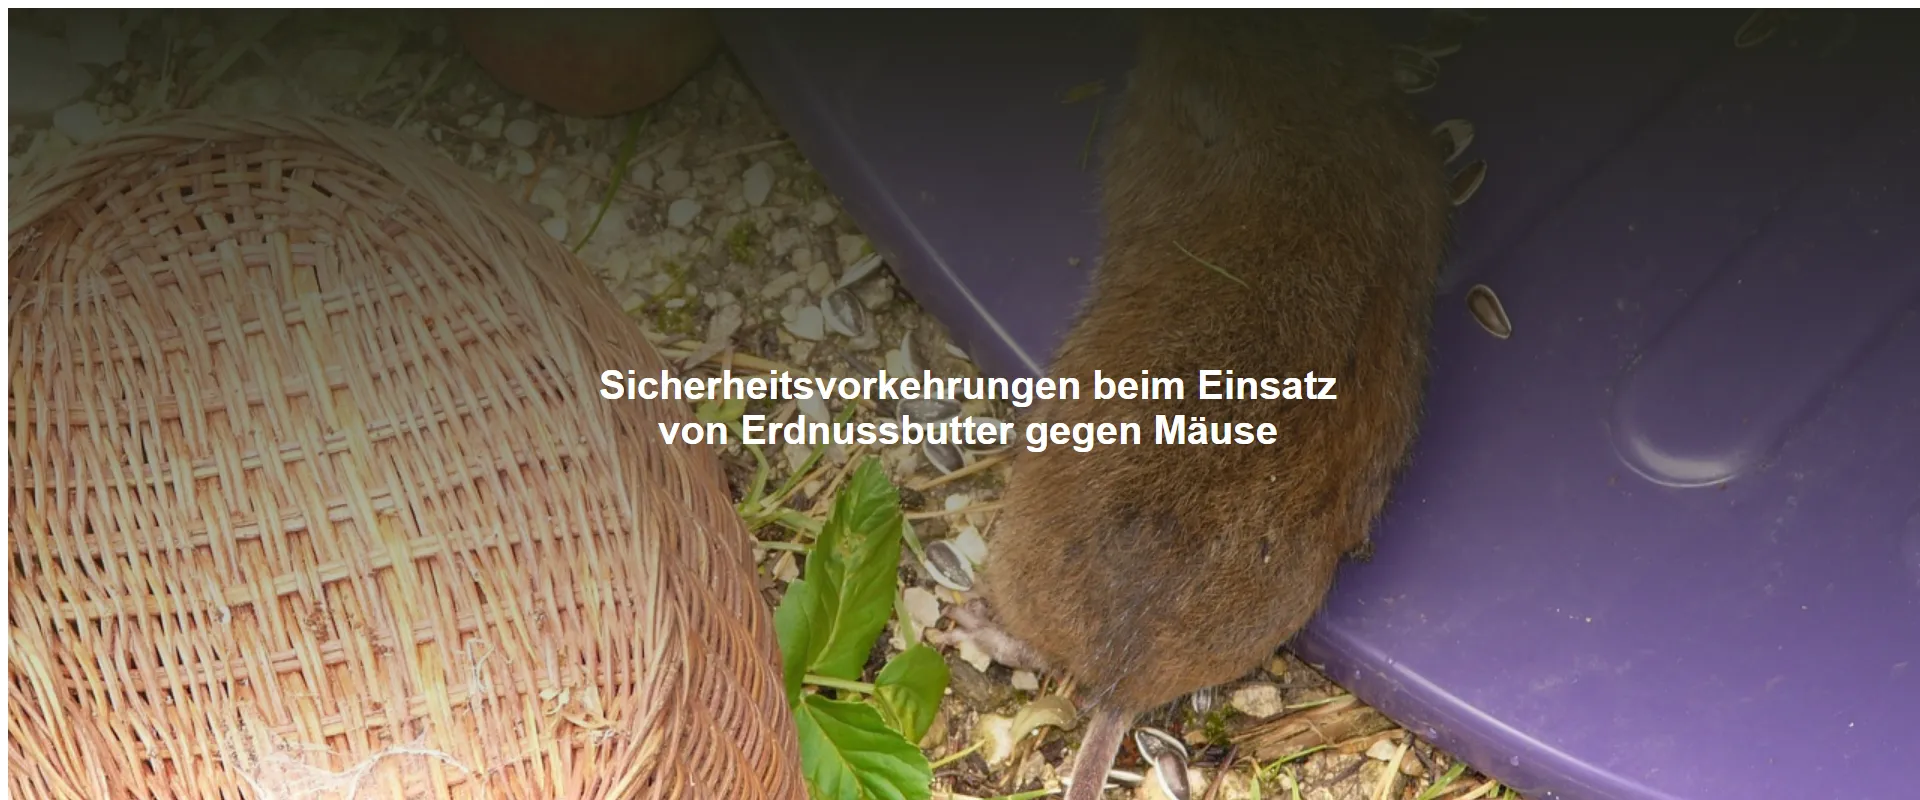 Sicherheitsvorkehrungen beim Einsatz von Erdnussbutter gegen Mäuse